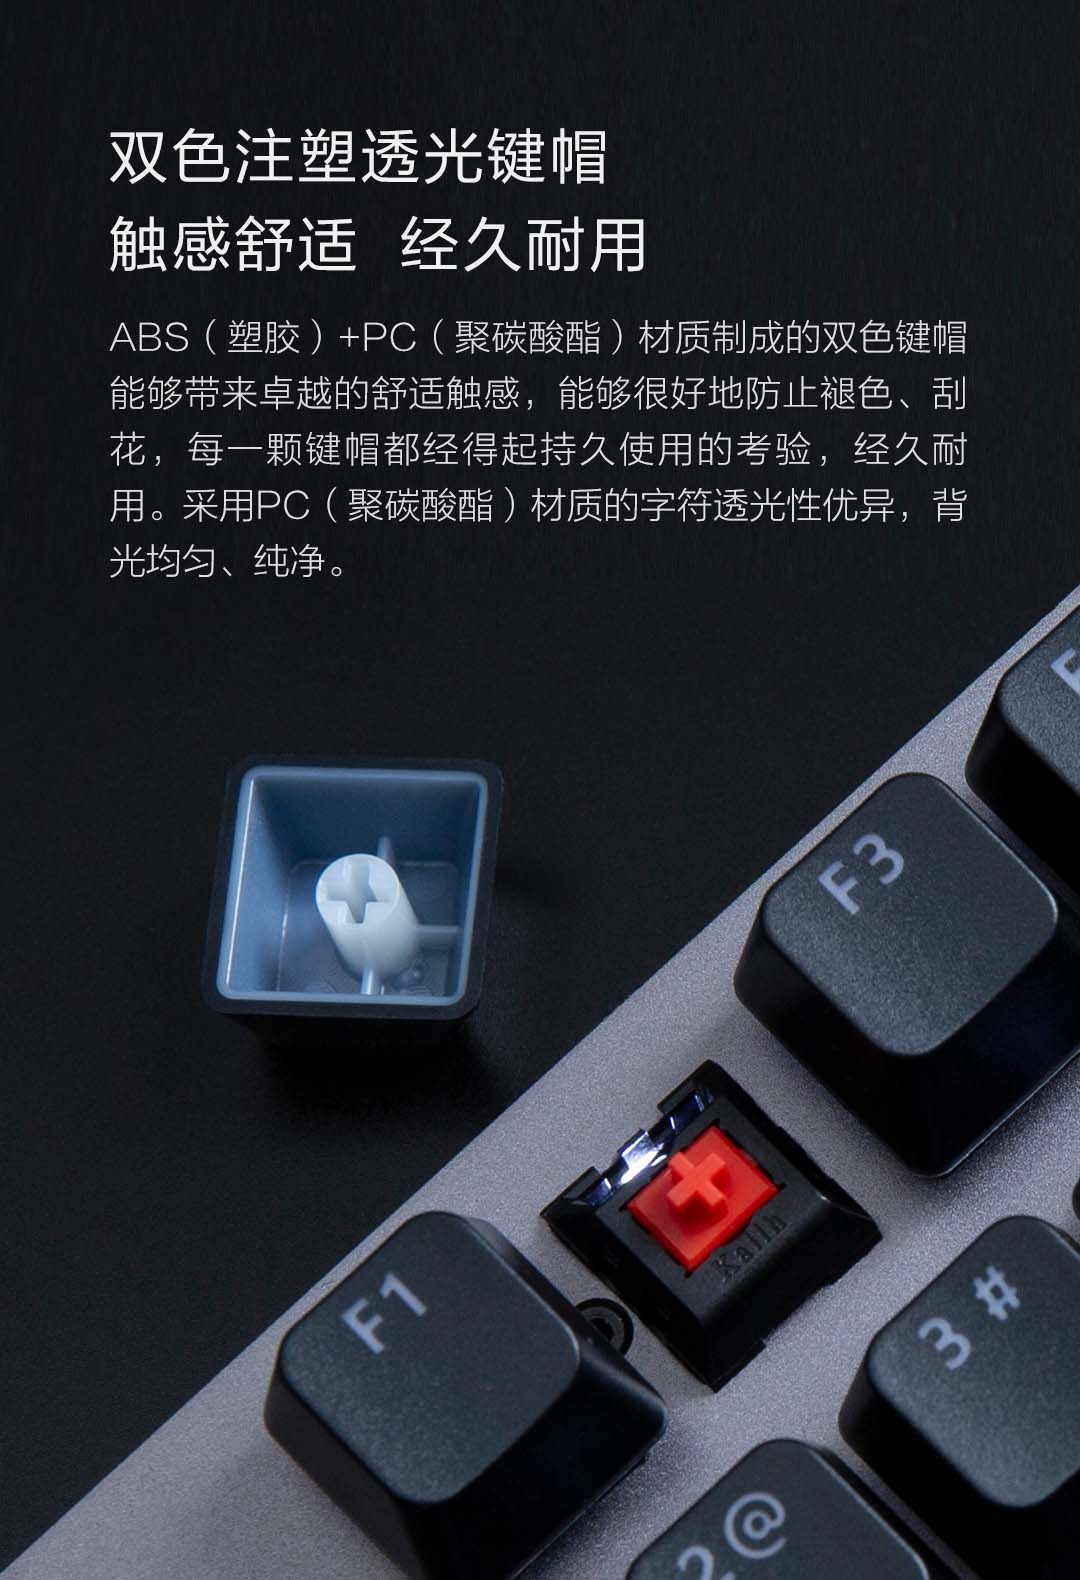 product_奇妙_米物有线机械键盘 width=